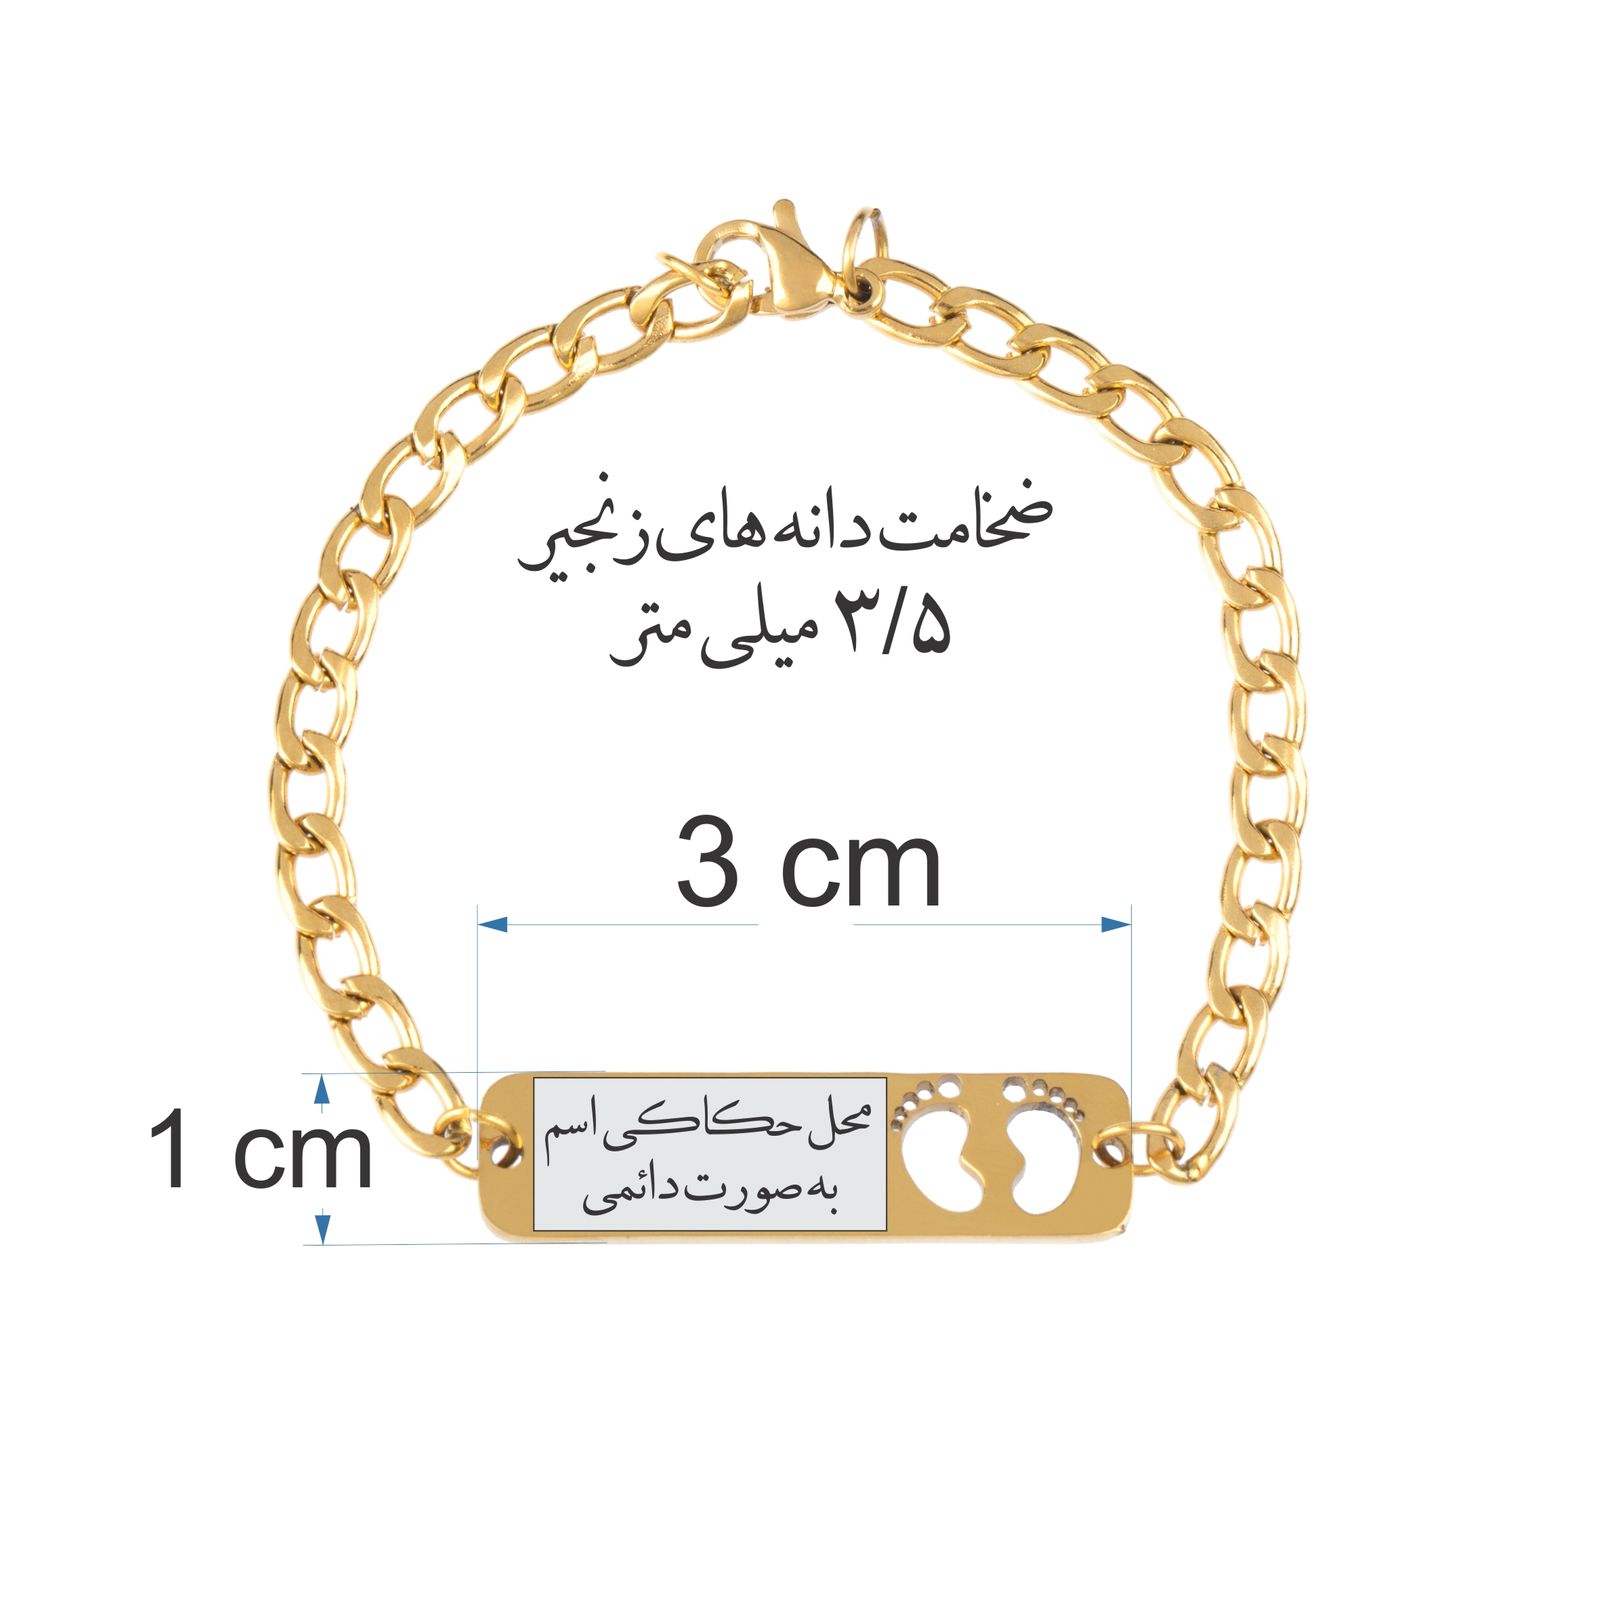 دستبند دخترانه گيلواره زراوشان مدل اسم توران  کد B74 -  - 3